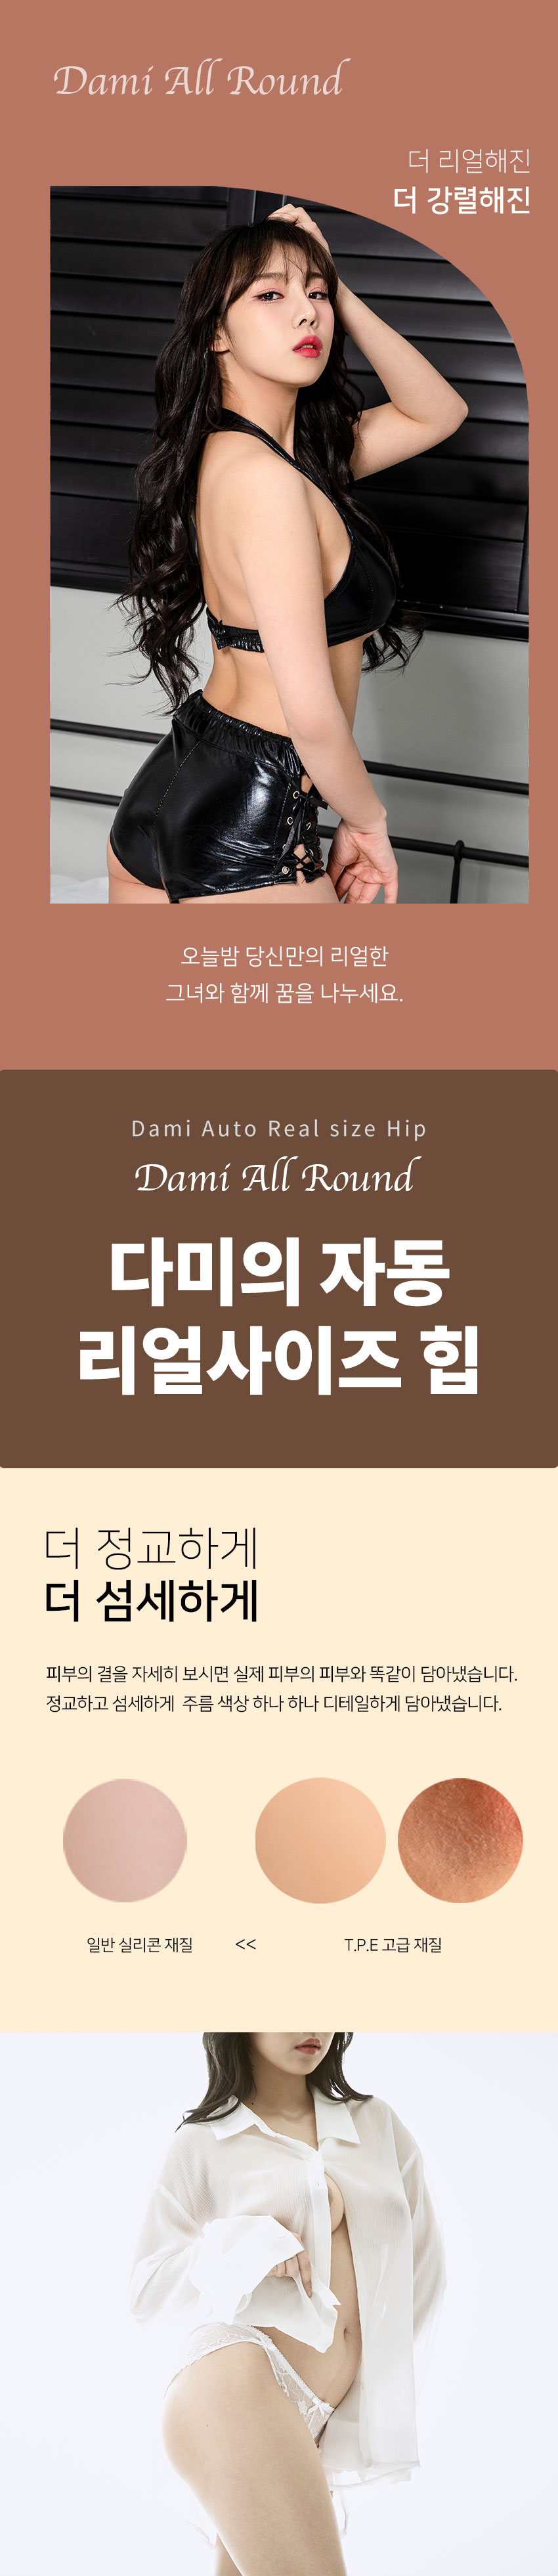 [자동 조임+진동+온열] 다미 자동 리얼사이즈 힙(Dami Auto Real Size Hip) - 1:1 실물 복제/컴위드